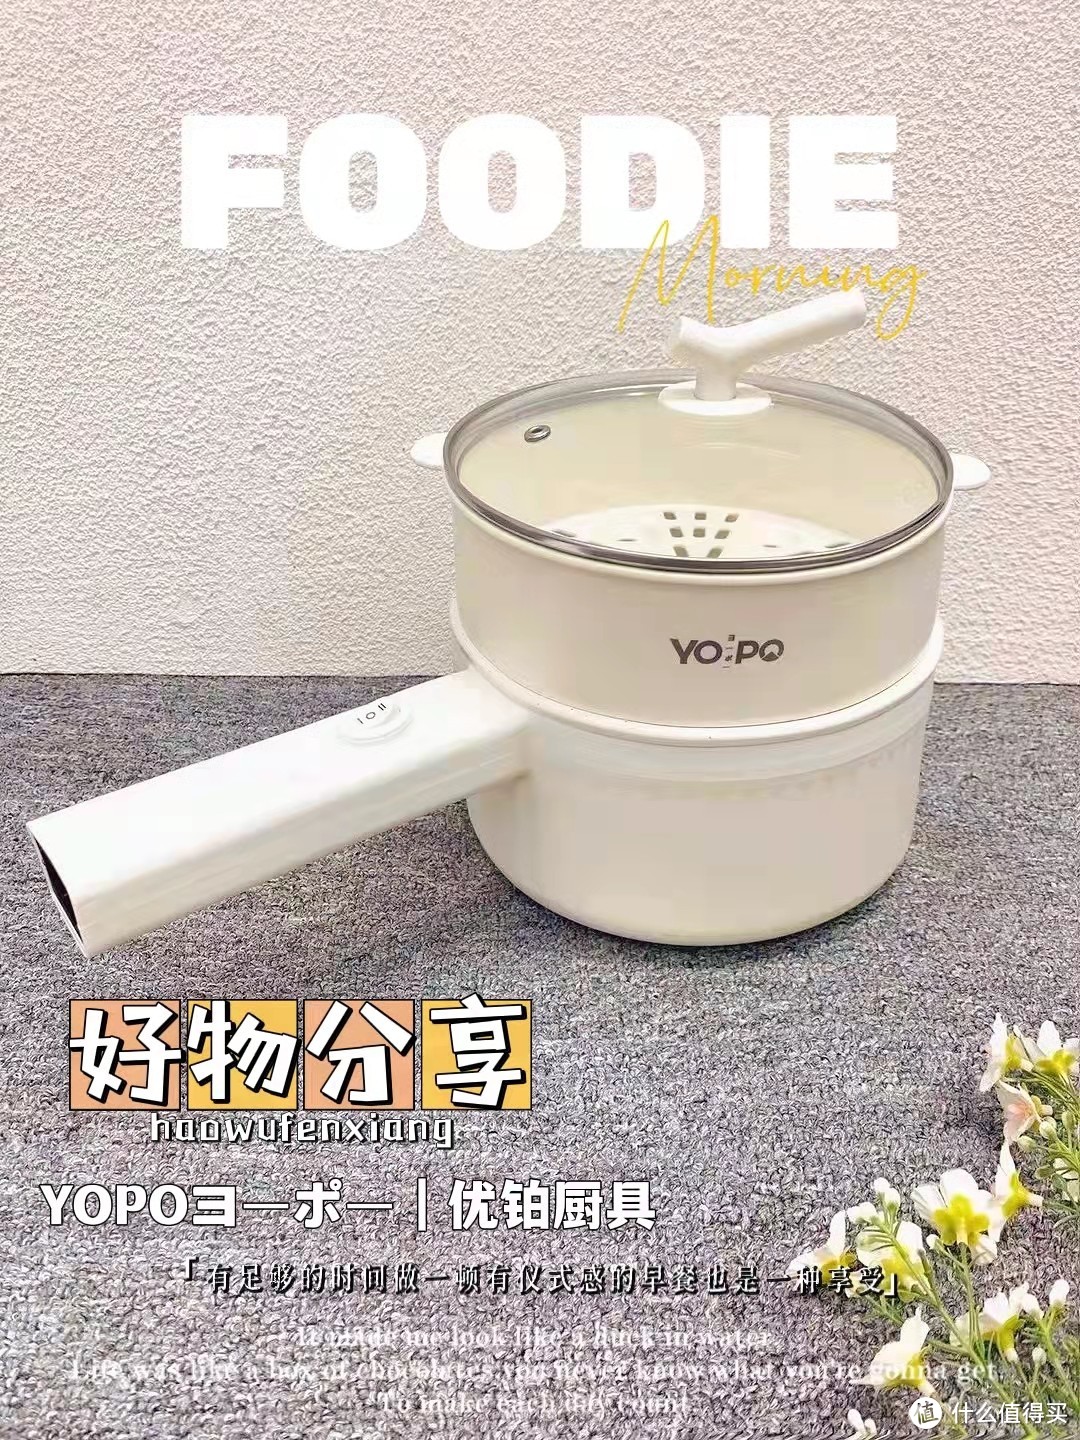 一个人的料理也可以很精致——YOPOヨーポー|优铂 电煮锅